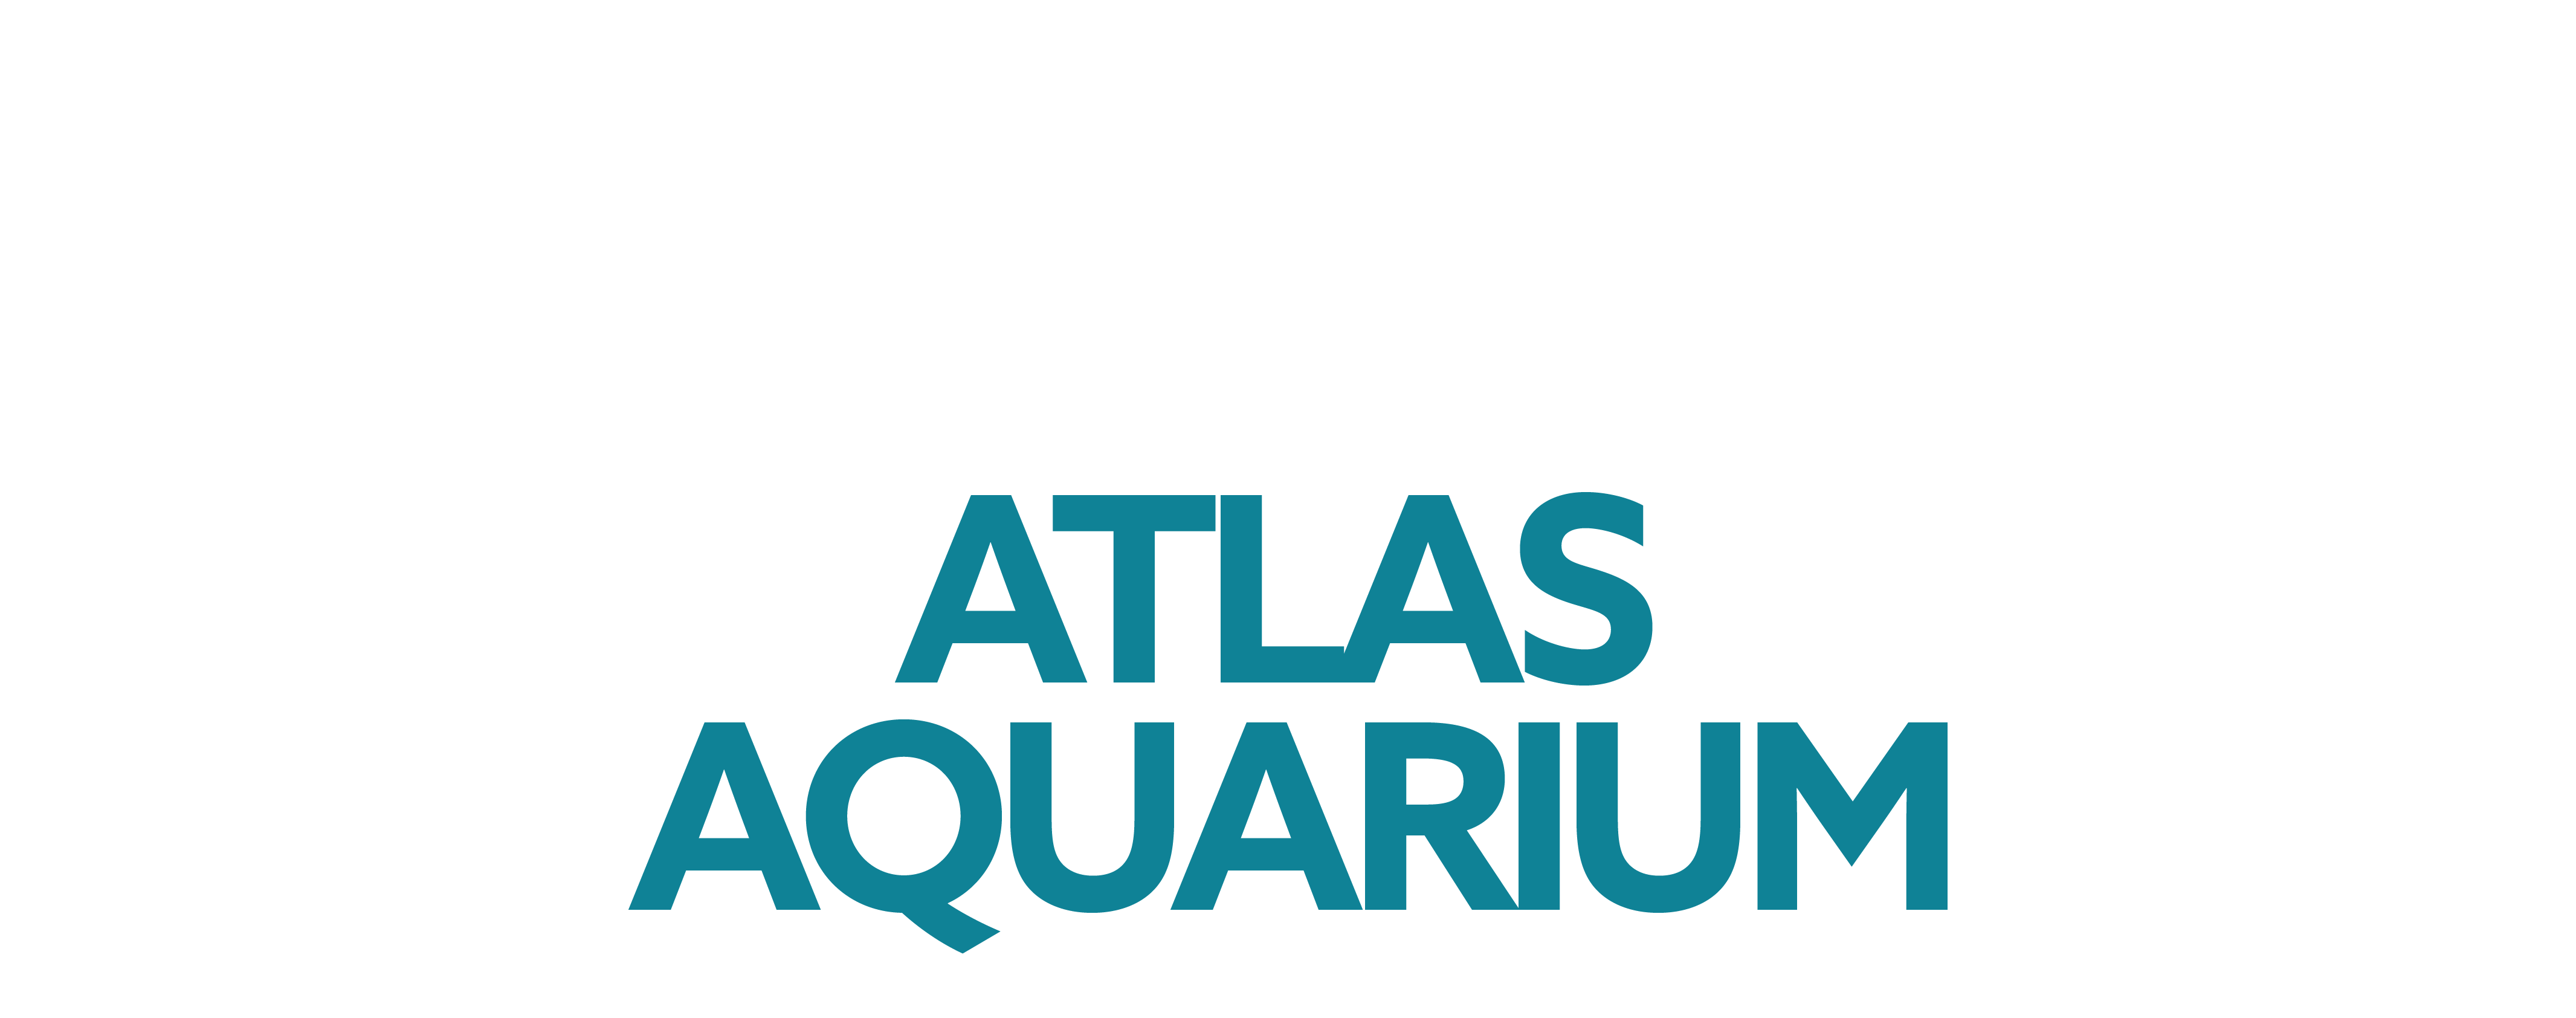 Atlas Aquarium